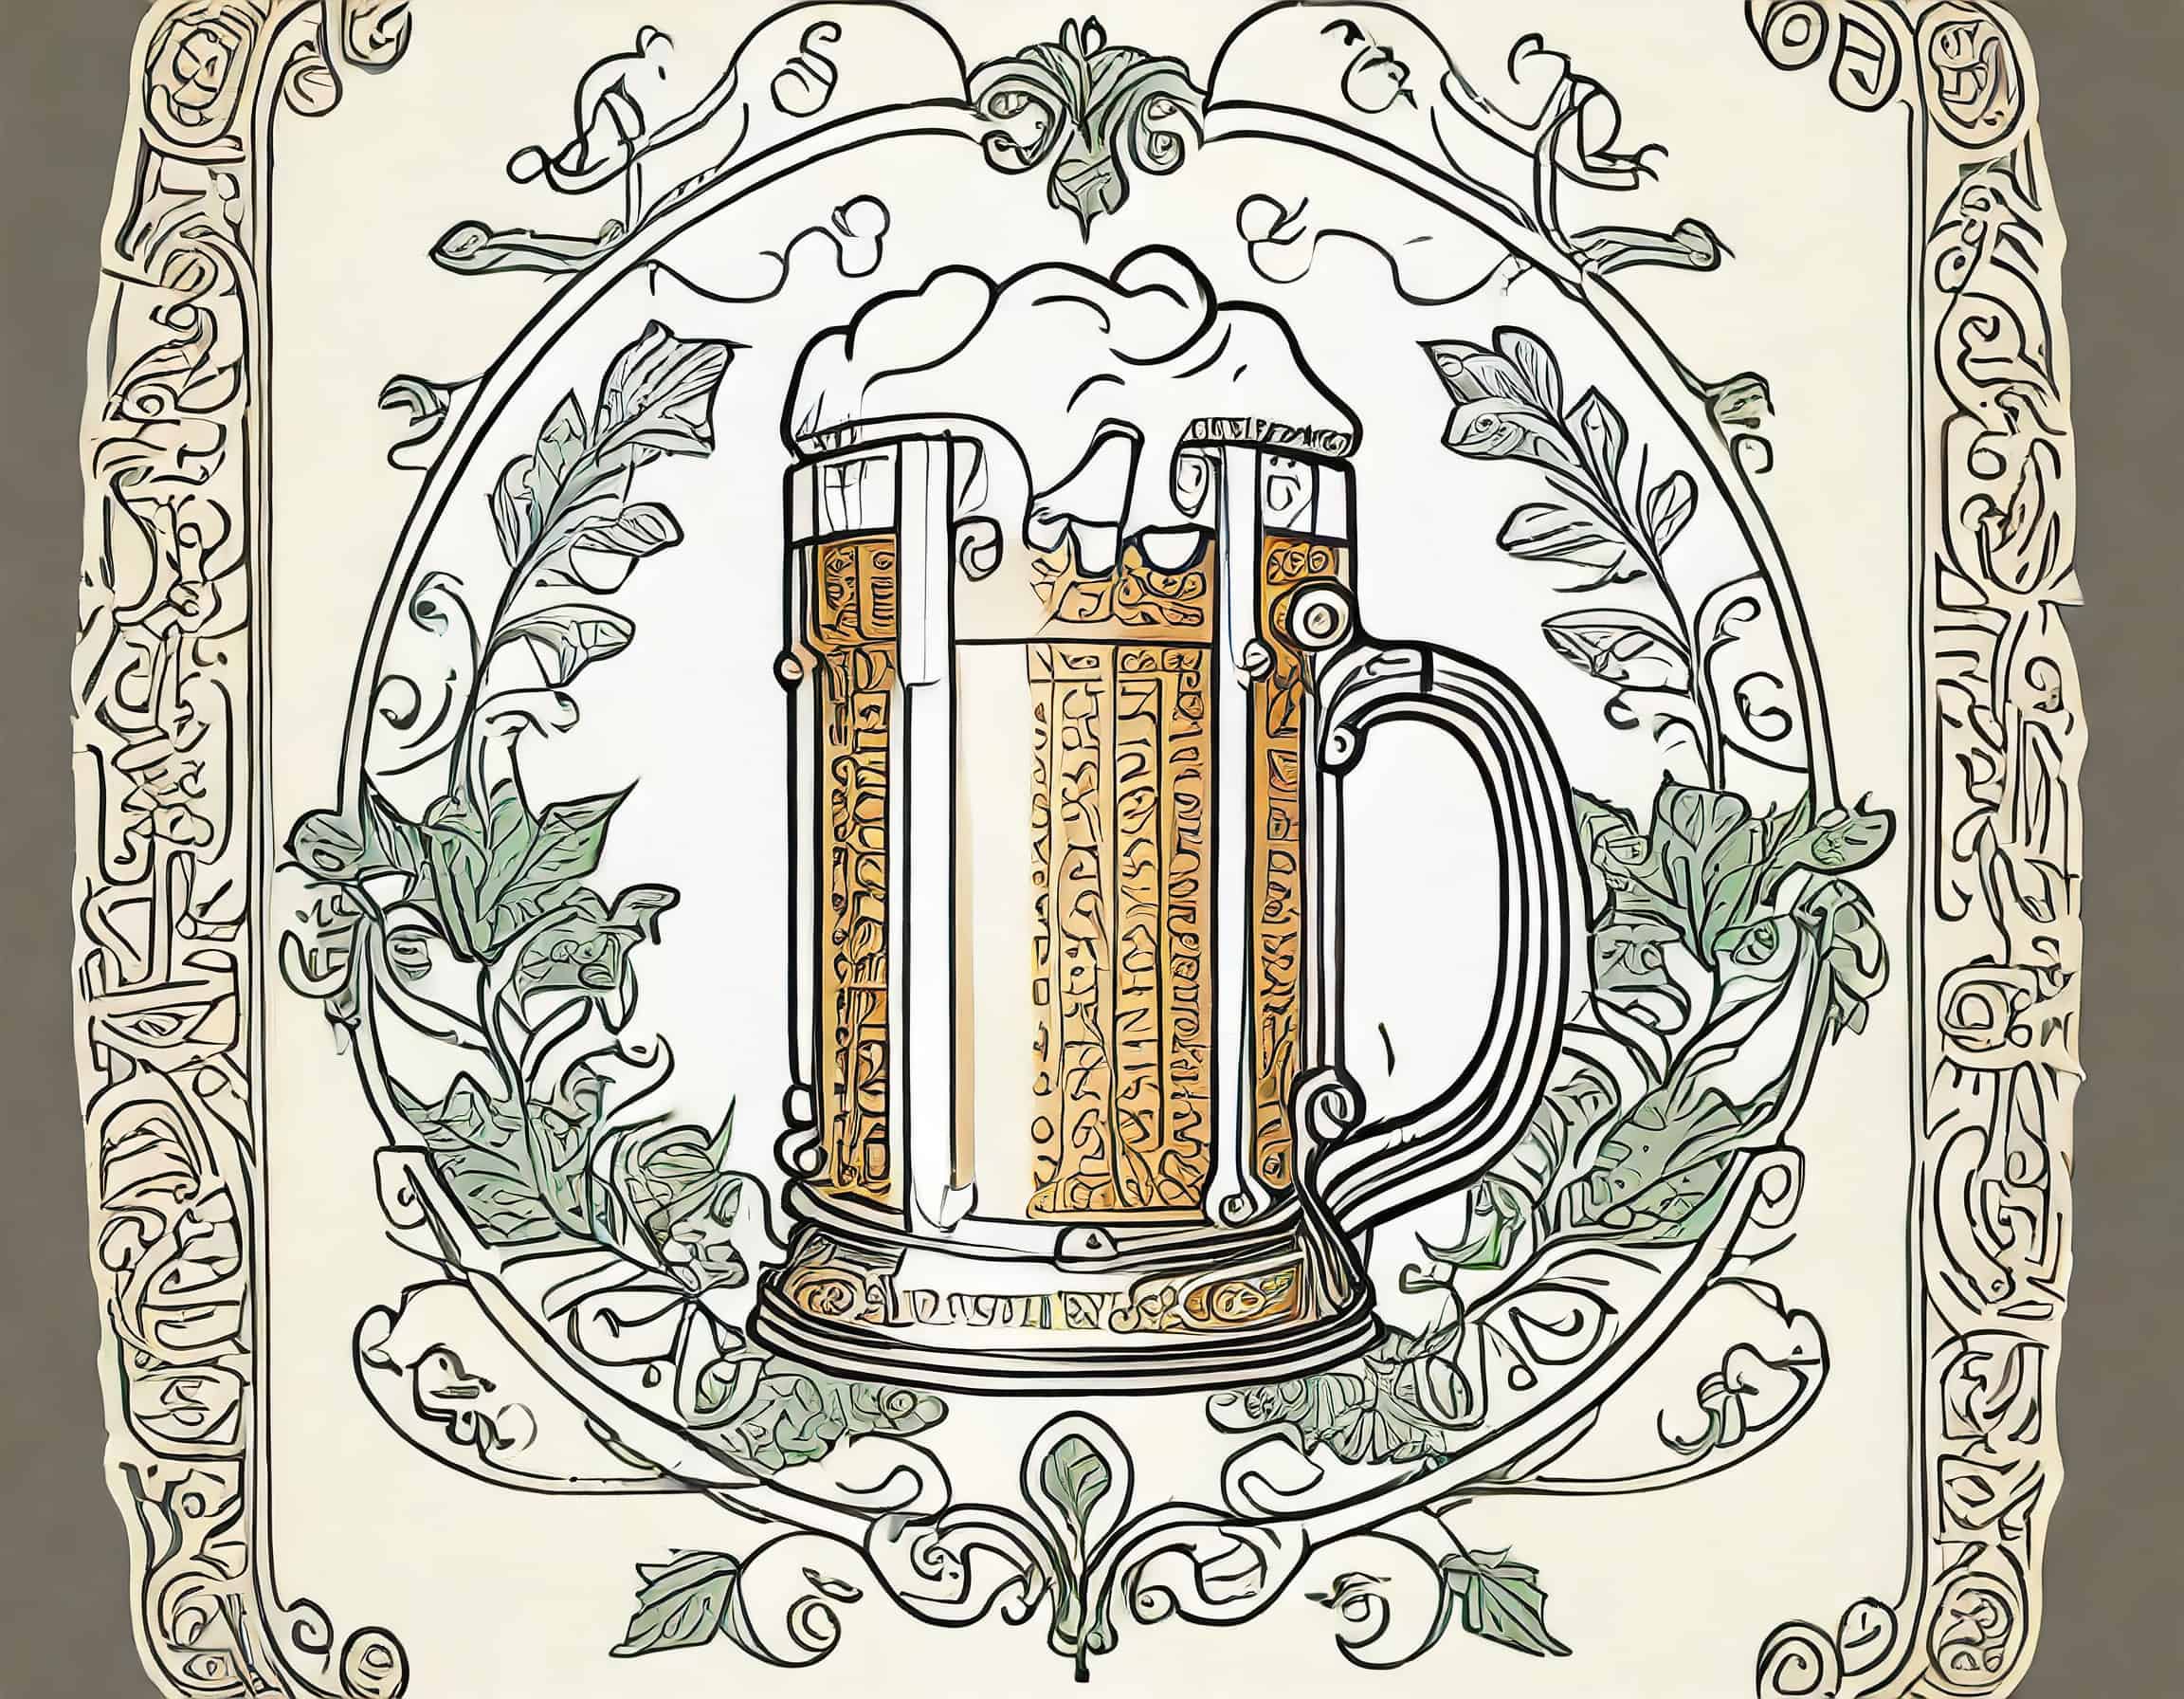 História da Cerveja: Reinheitsgebot